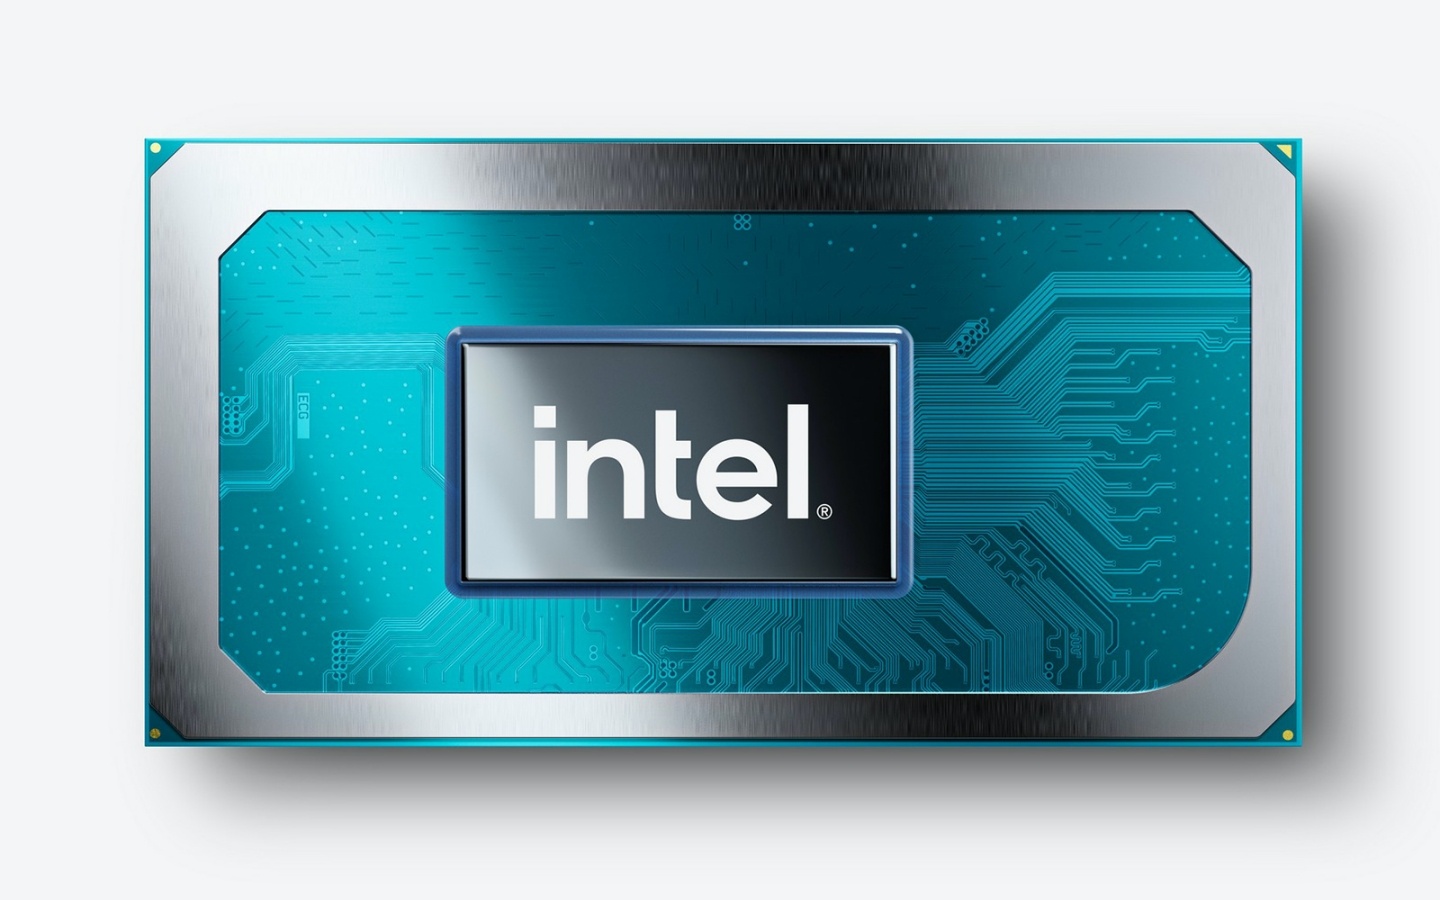 全新第 11 代 Intel Core H 系列處理器來了！採用 10nm 製程，效能較前代提升了 19%